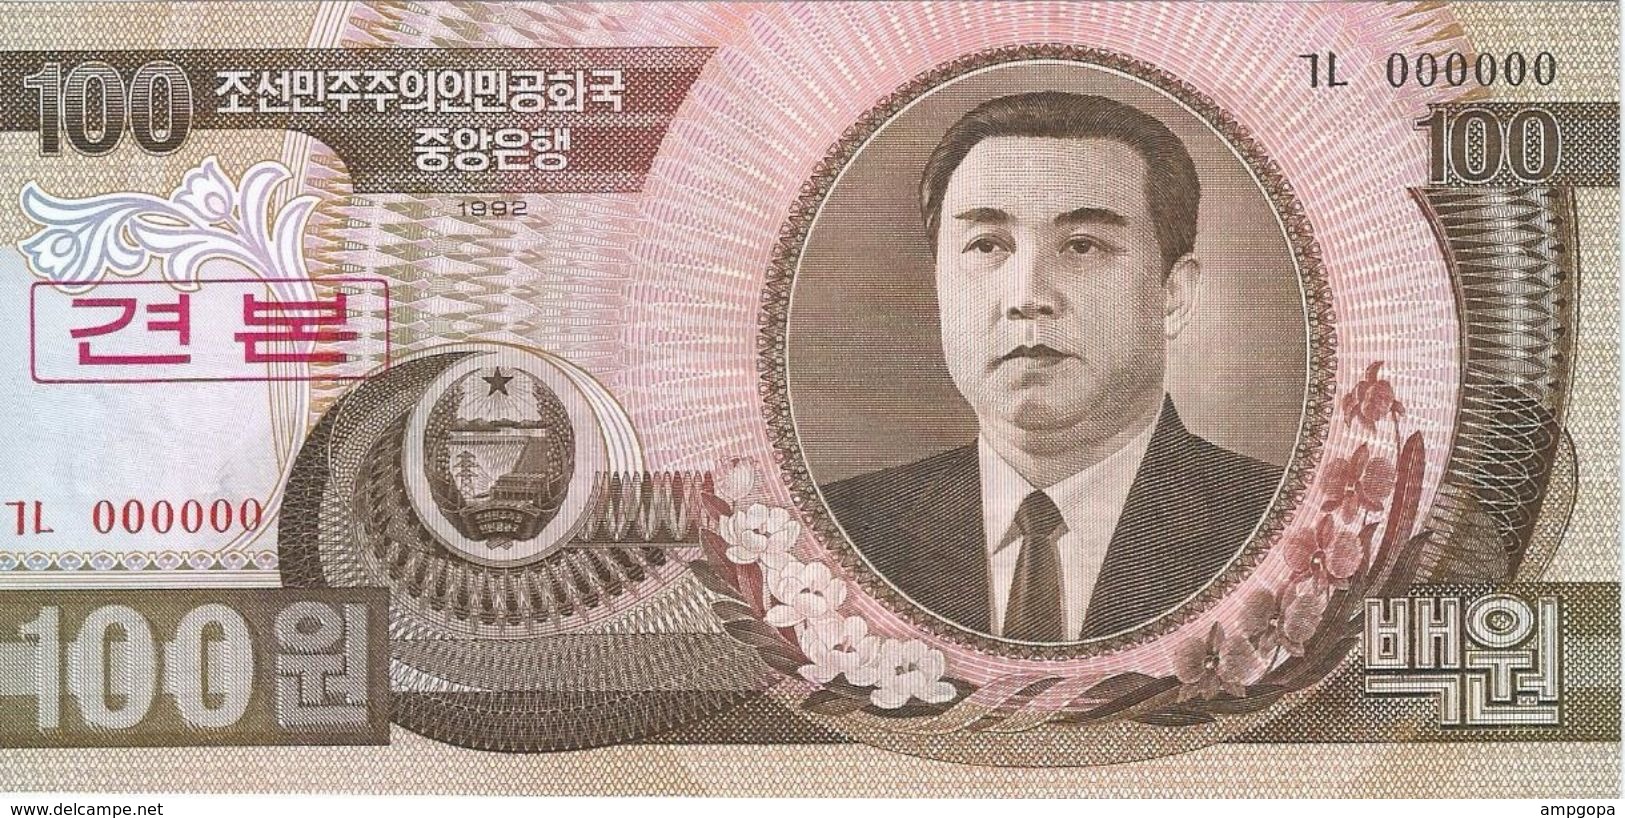 Corea Del Norte - North Korea 100 Won 1992 SPECIMEN Pick 43.s UNC Ref 566-1 - Corea Del Norte